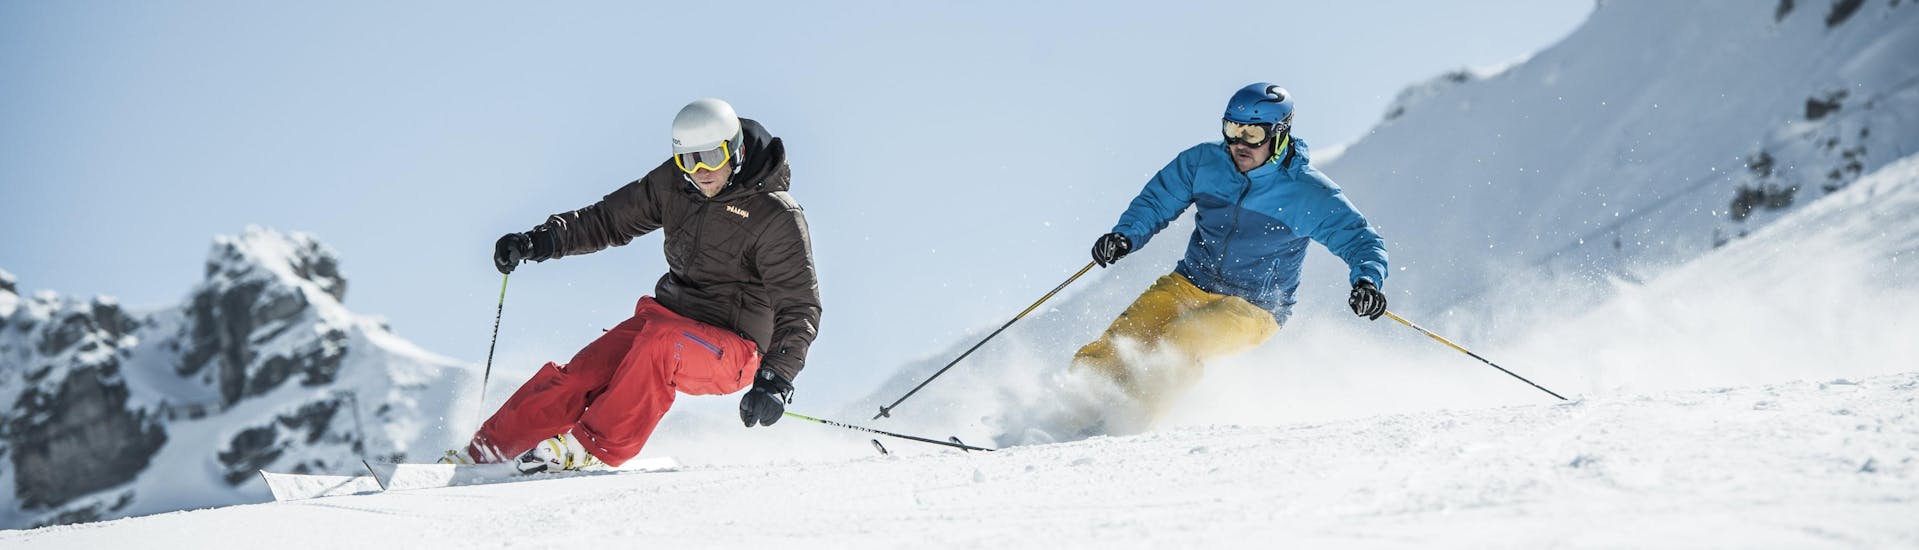 Un skieur travaille sa technique de ski avec son moniteur de ski lors d'un cours particulier de ski dans la destination de ski Bolsterlang.